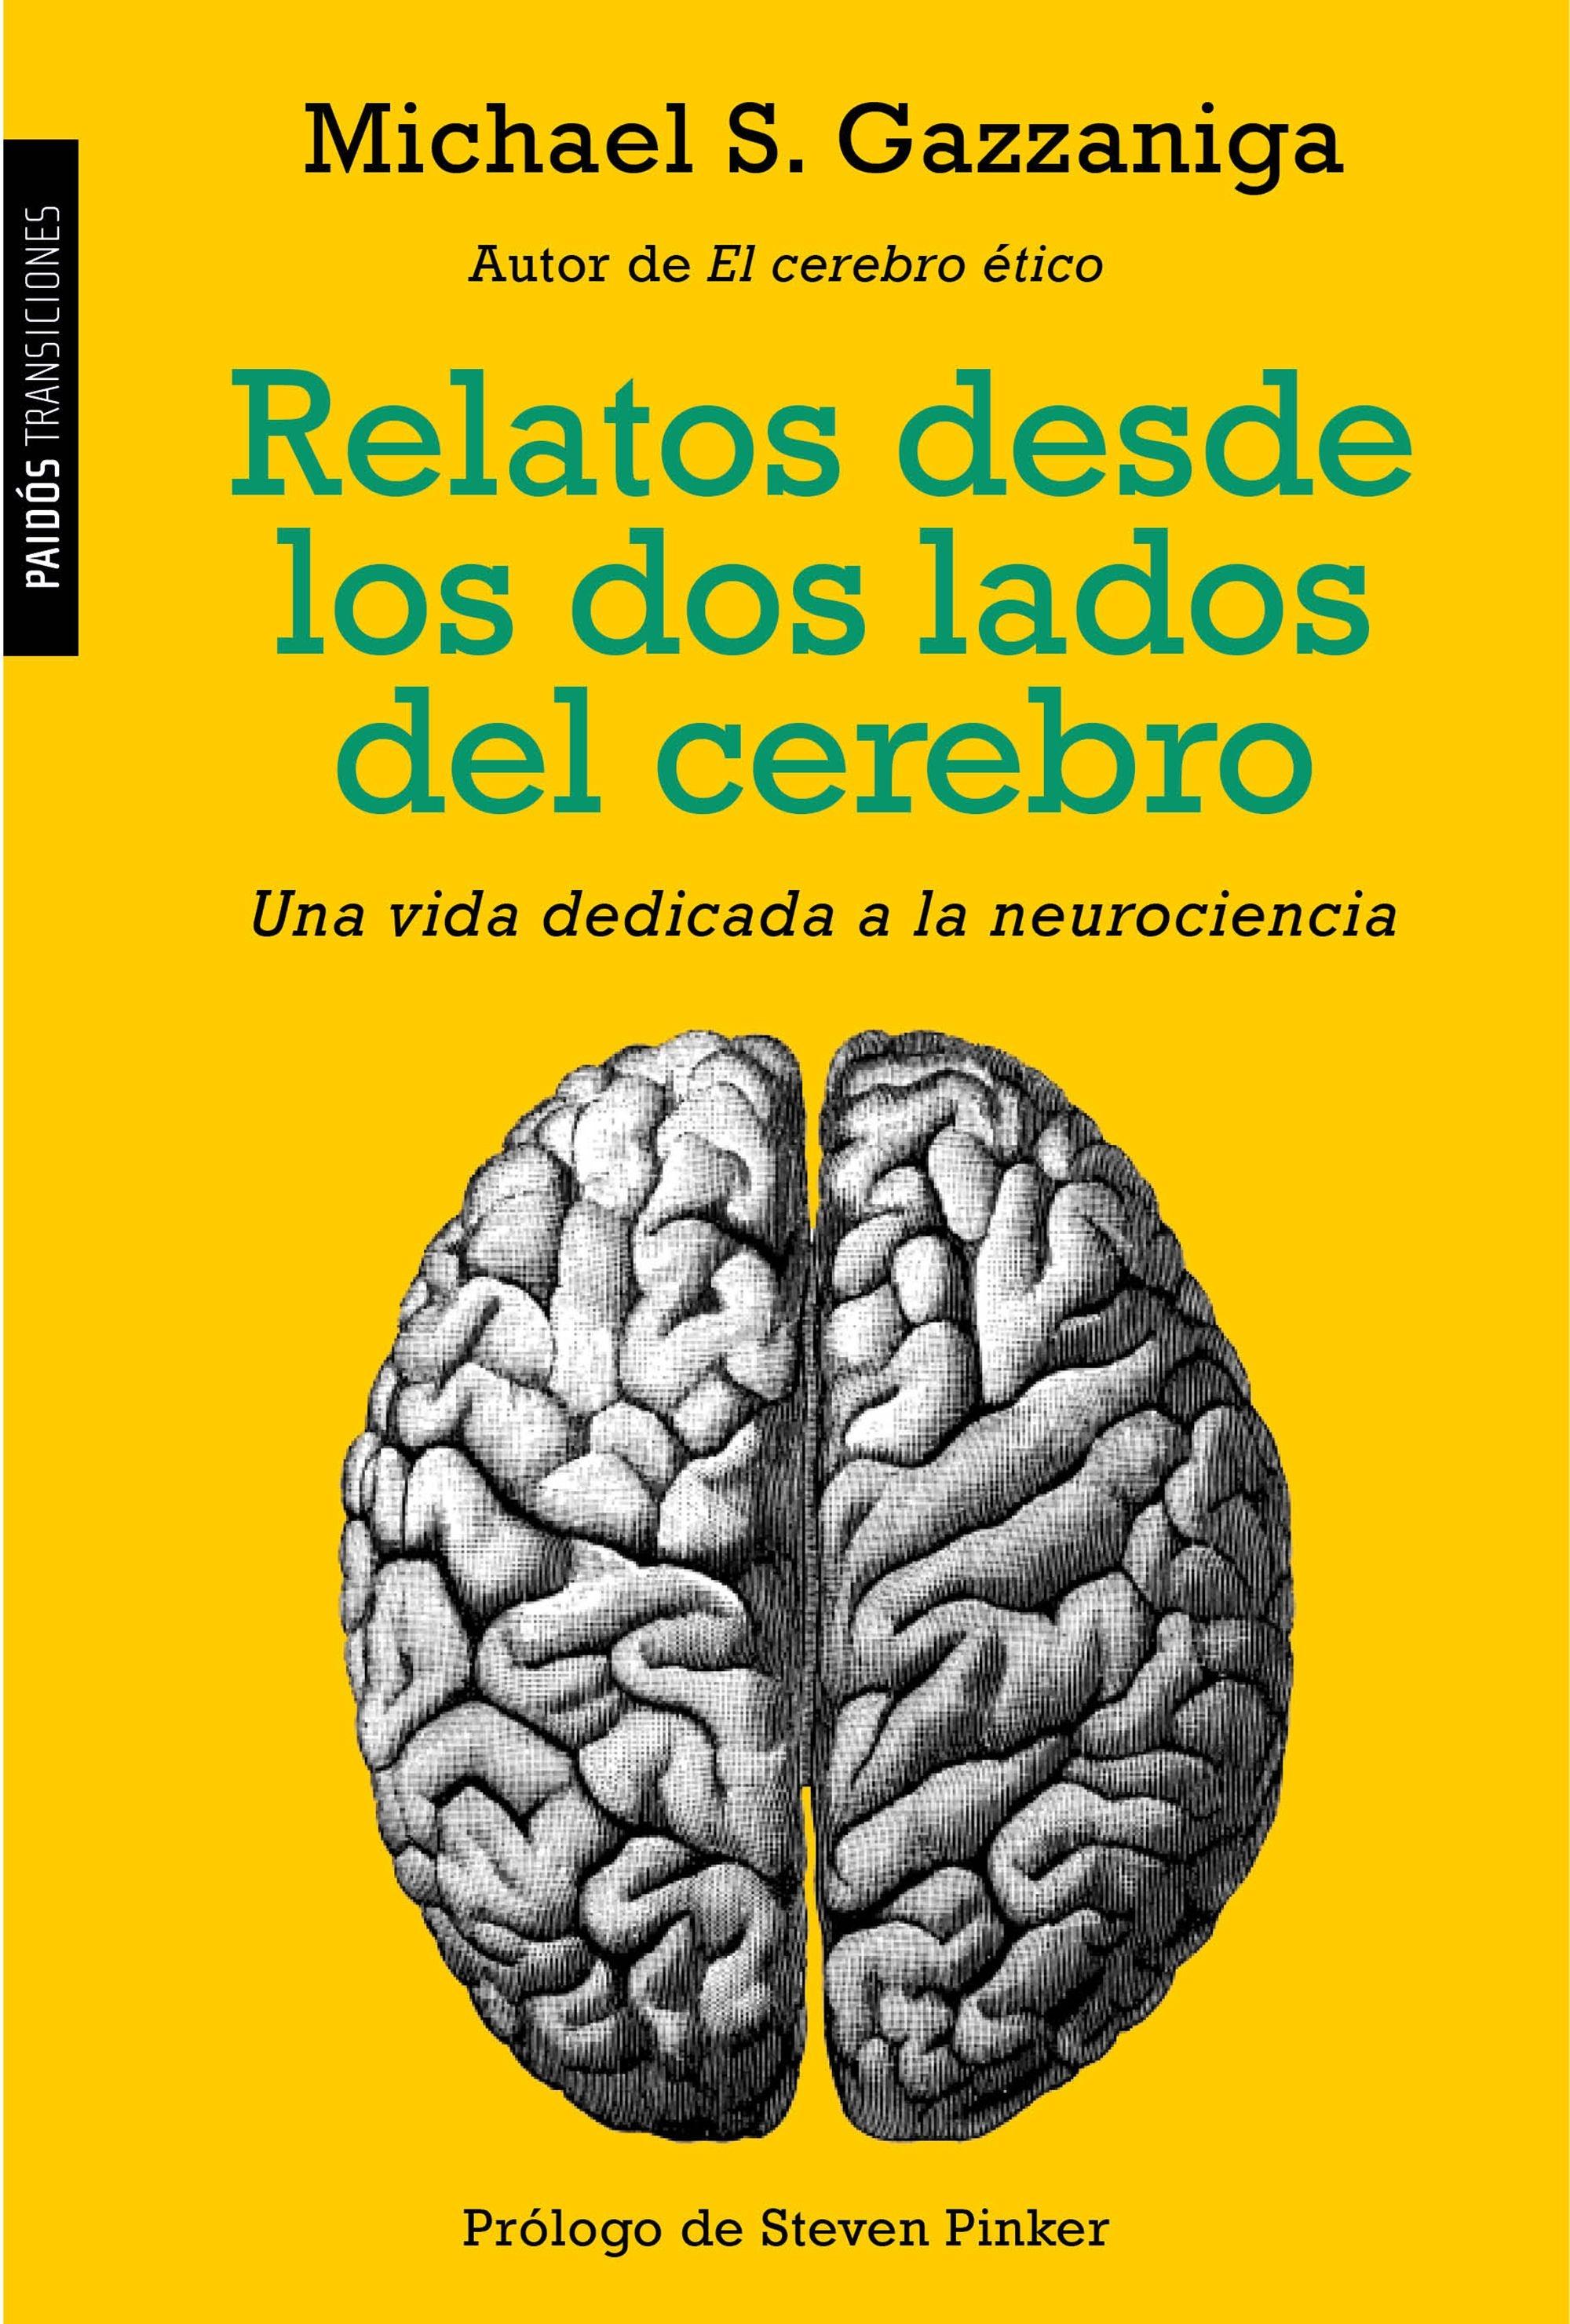 Relatos desde los dos lados del cerebro "Una vida dedicada a la neurociencia". 